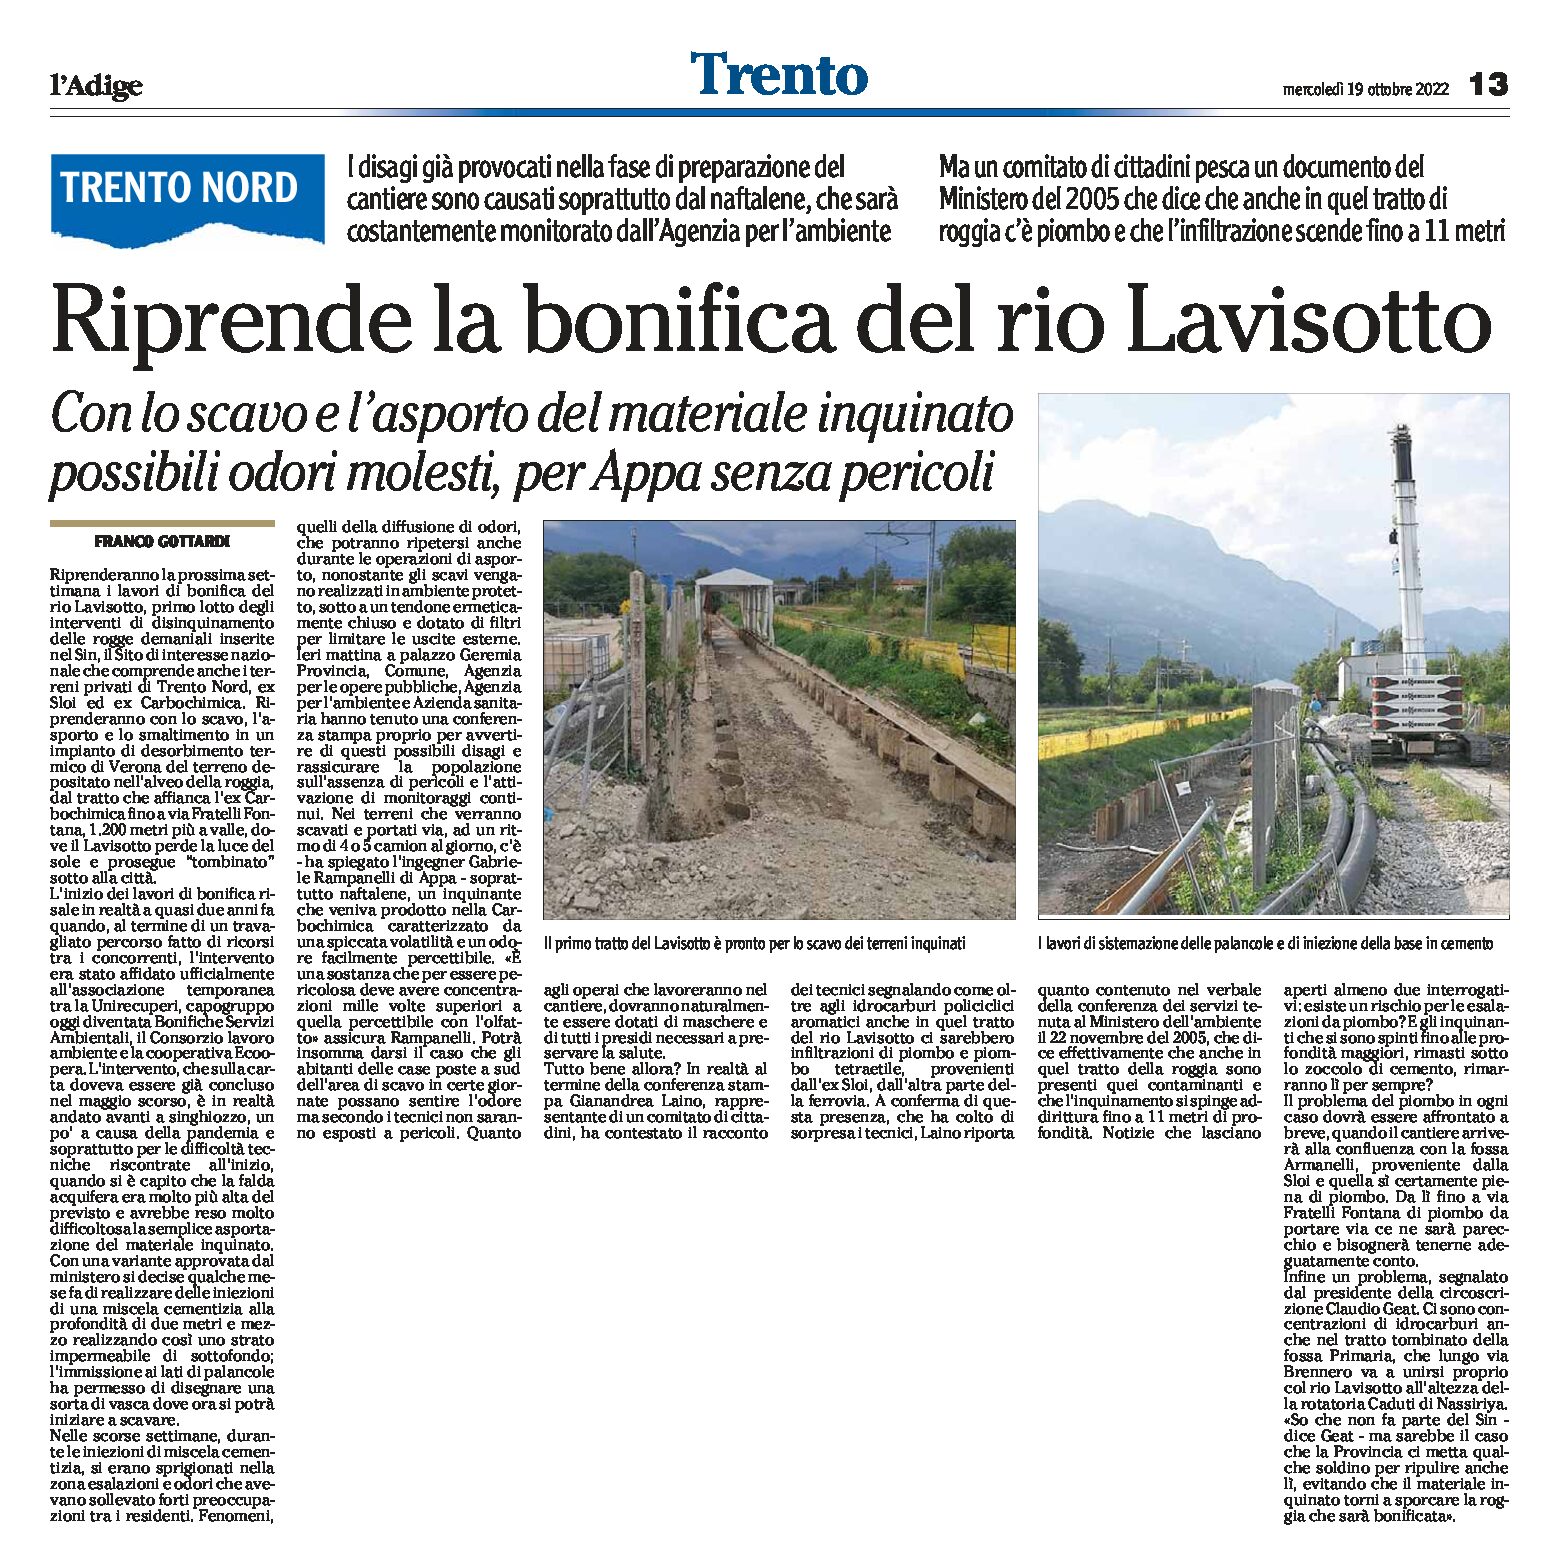 Trento nord: riprende la bonifica del rio Lavisotto